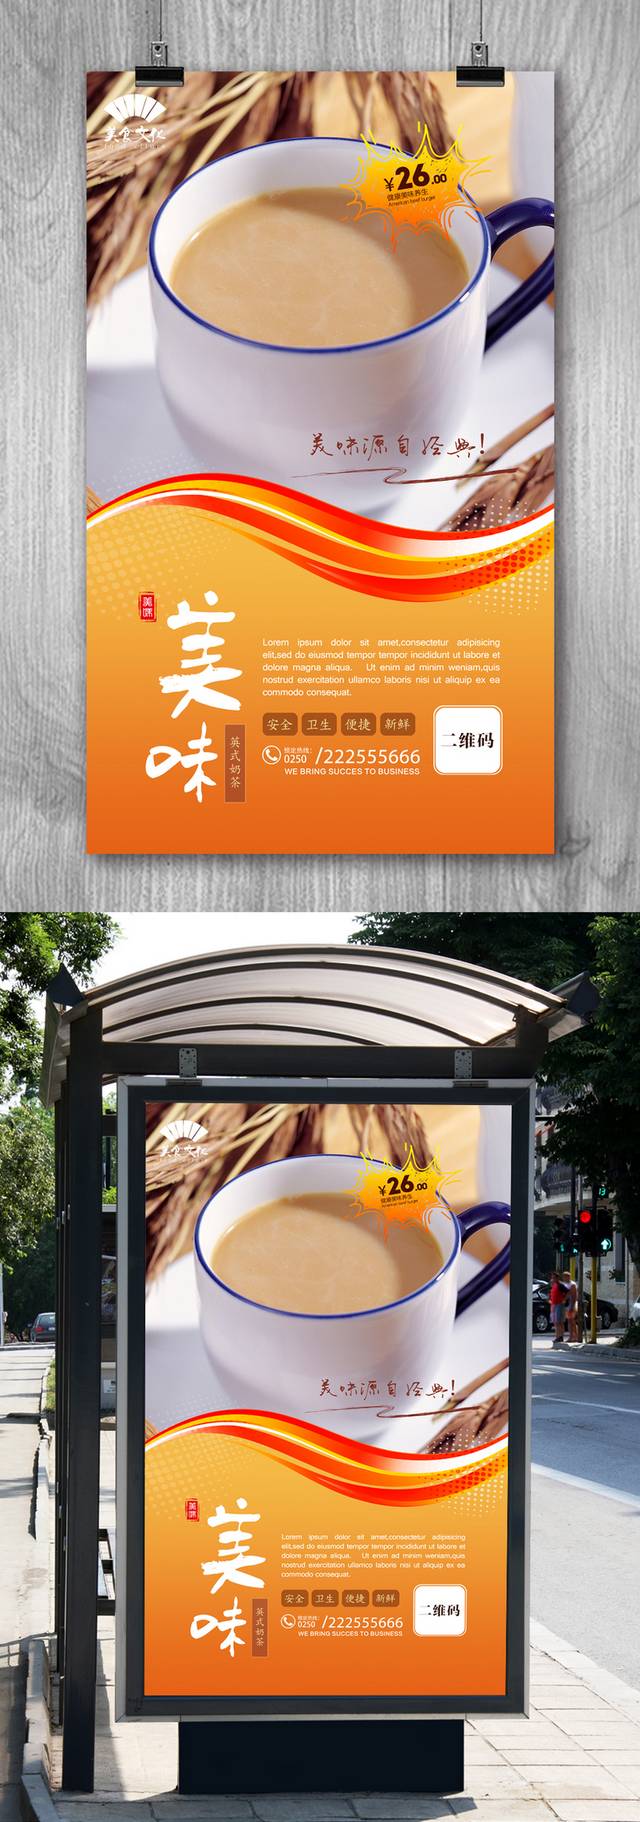 高清英式奶茶宣传海报设计